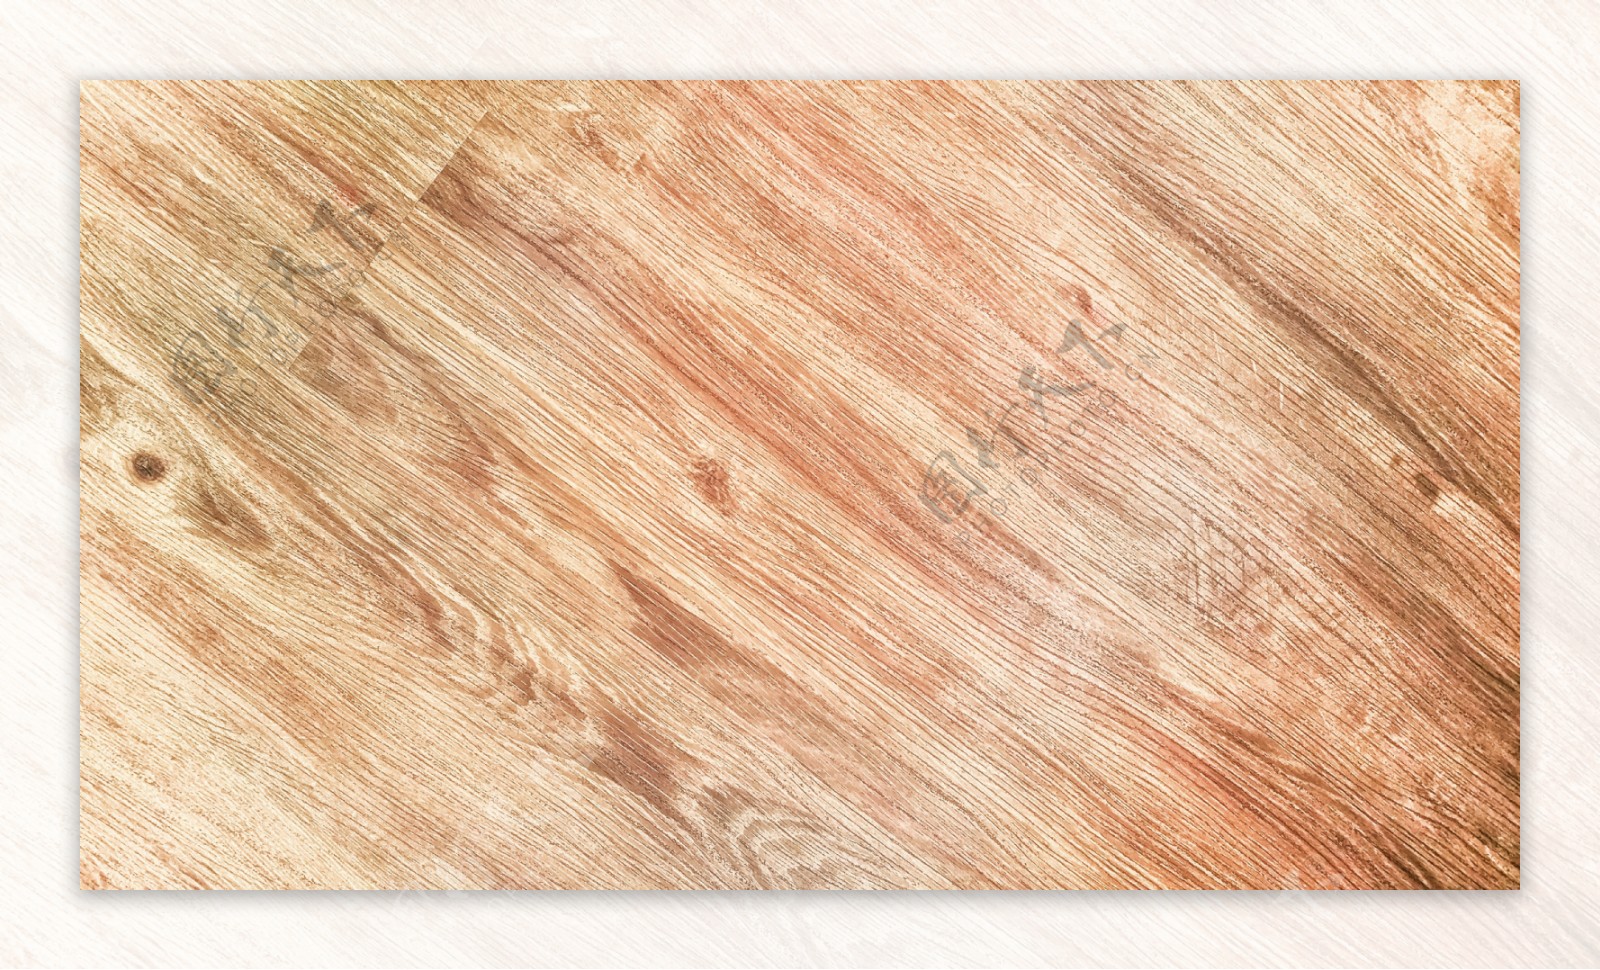 木头木板底纹木头纹理素材